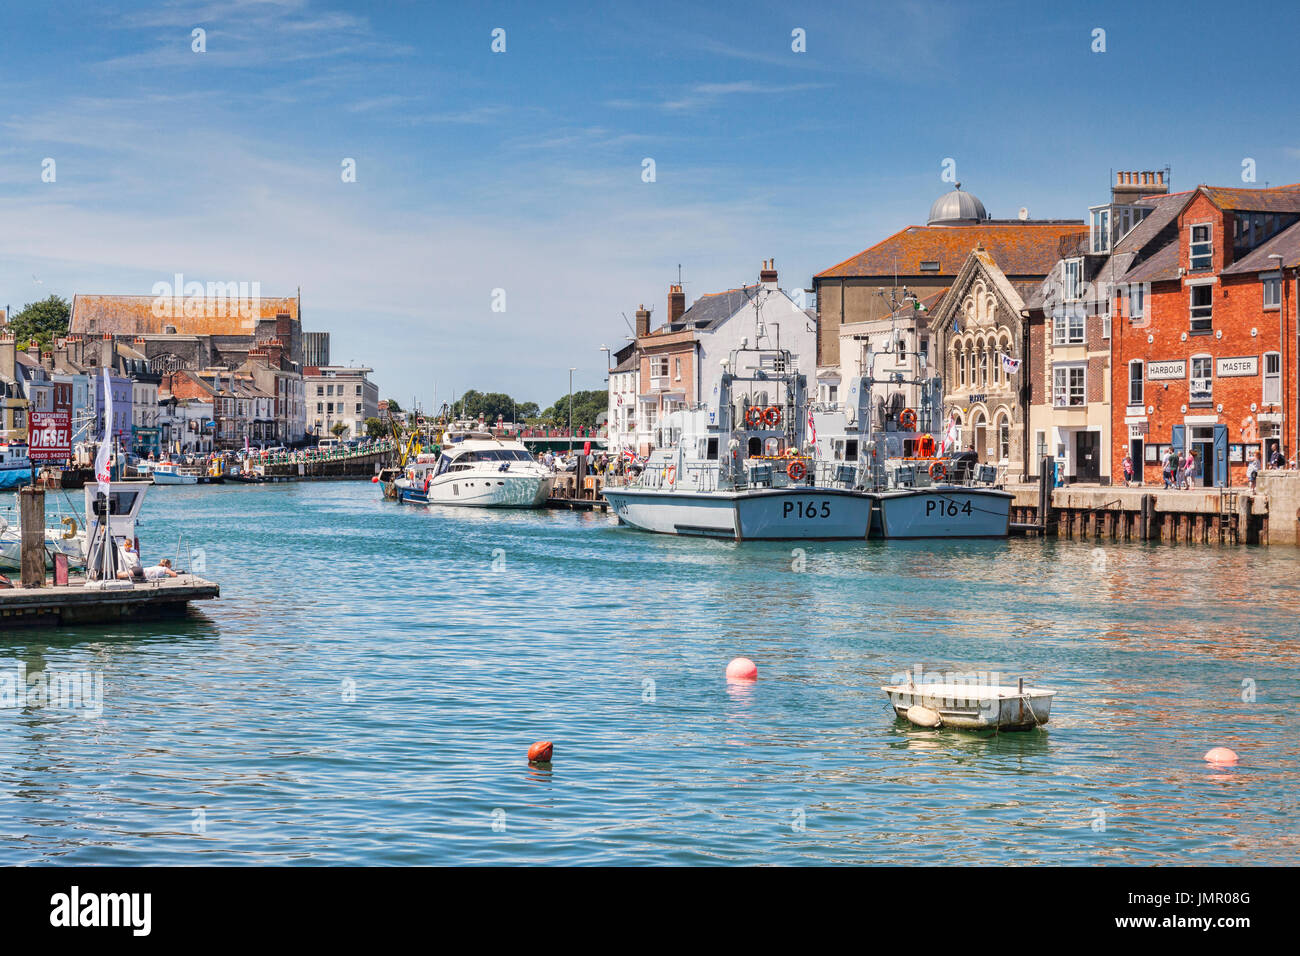 2 Juillet 2017 : Weymouth, Dorset, England, UK - La rivière Wey et le vieux quai sur un bel après-midi d'été ensoleillé. Banque D'Images